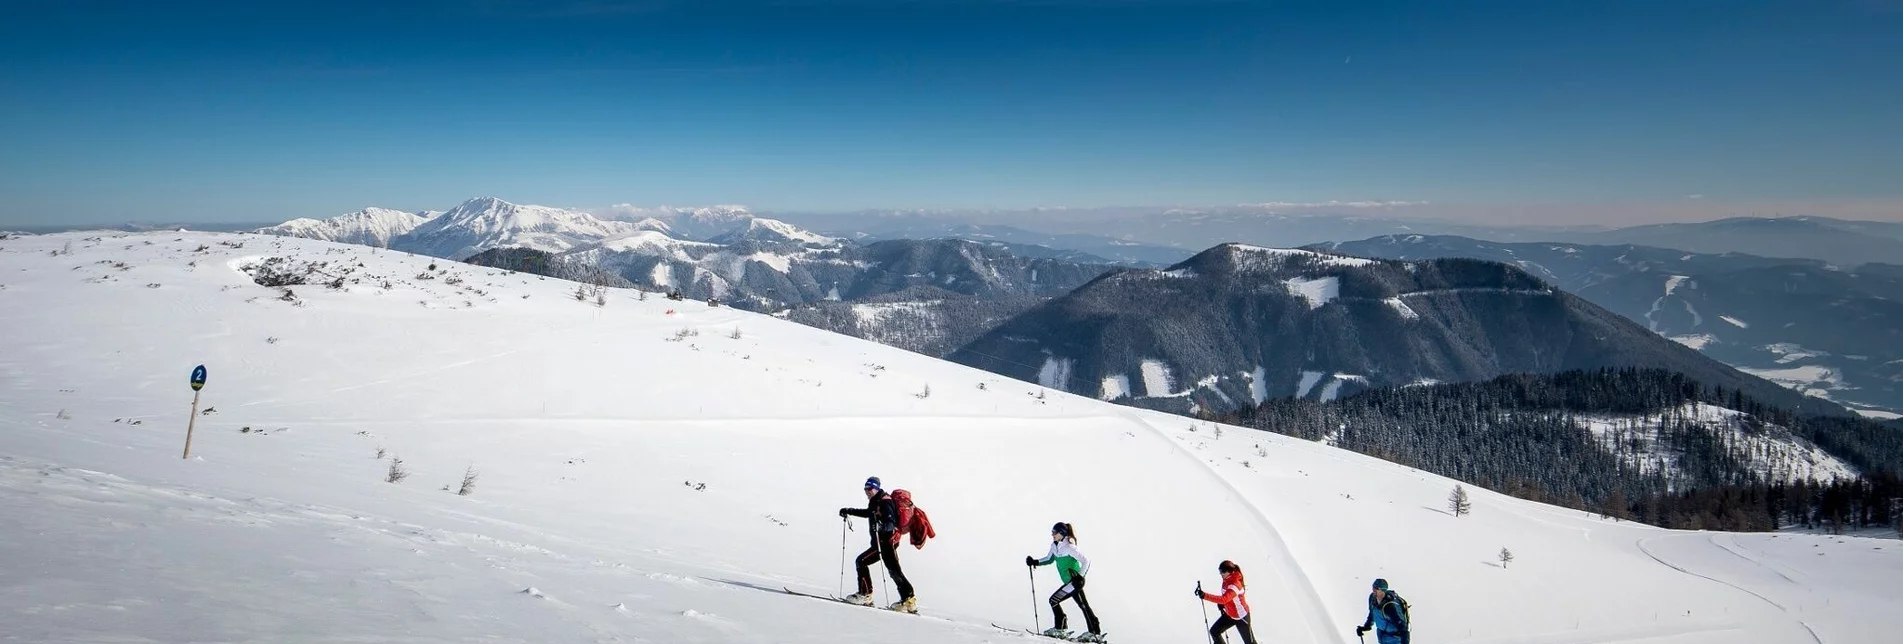 Ski Touring Skitour von der Unteren Dullwitz auf den Hochschwab - Touren-Impression #1 | © TV Hochsteiermark